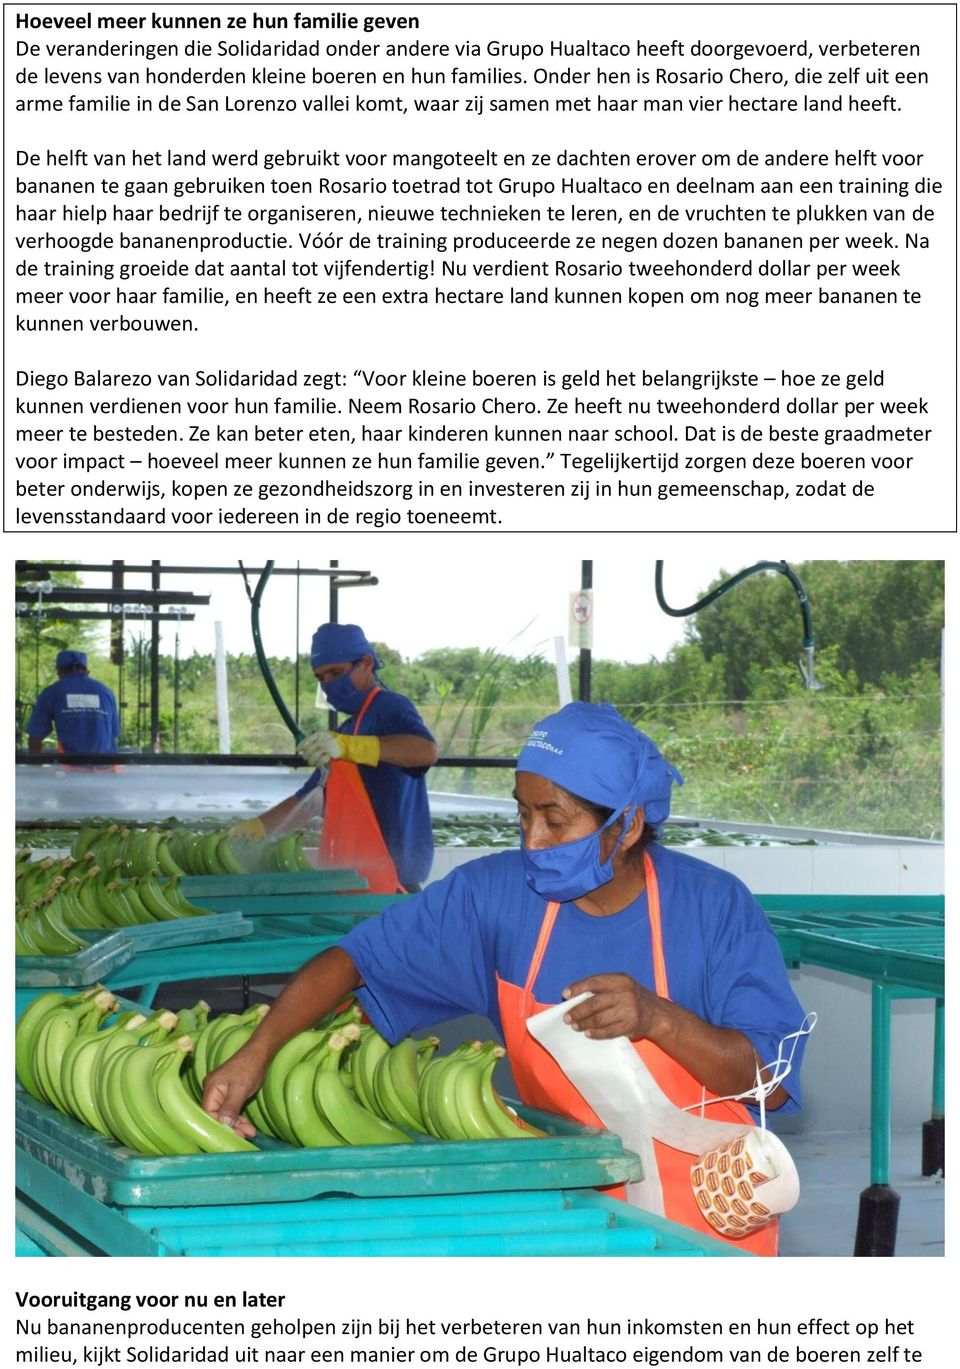 De helft van het land werd gebruikt voor mangoteelt en ze dachten erover om de andere helft voor bananen te gaan gebruiken toen Rosario toetrad tot Grupo Hualtaco en deelnam aan een training die haar